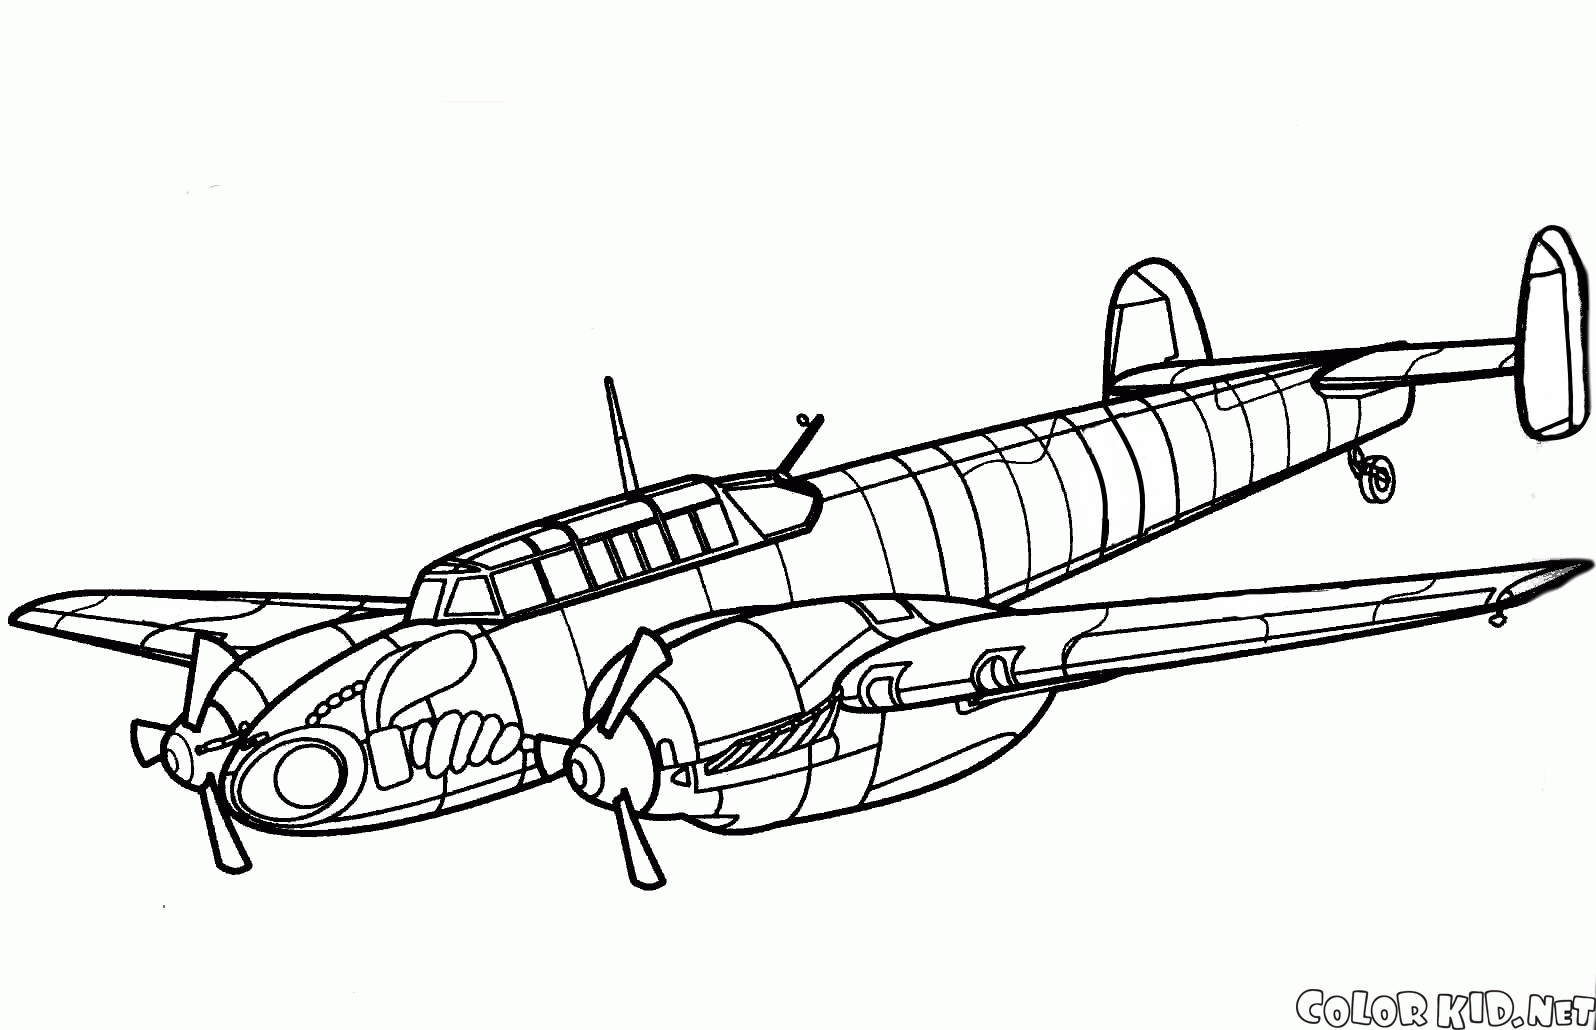 Messerschmitt-100S-4/V fighter aircraft